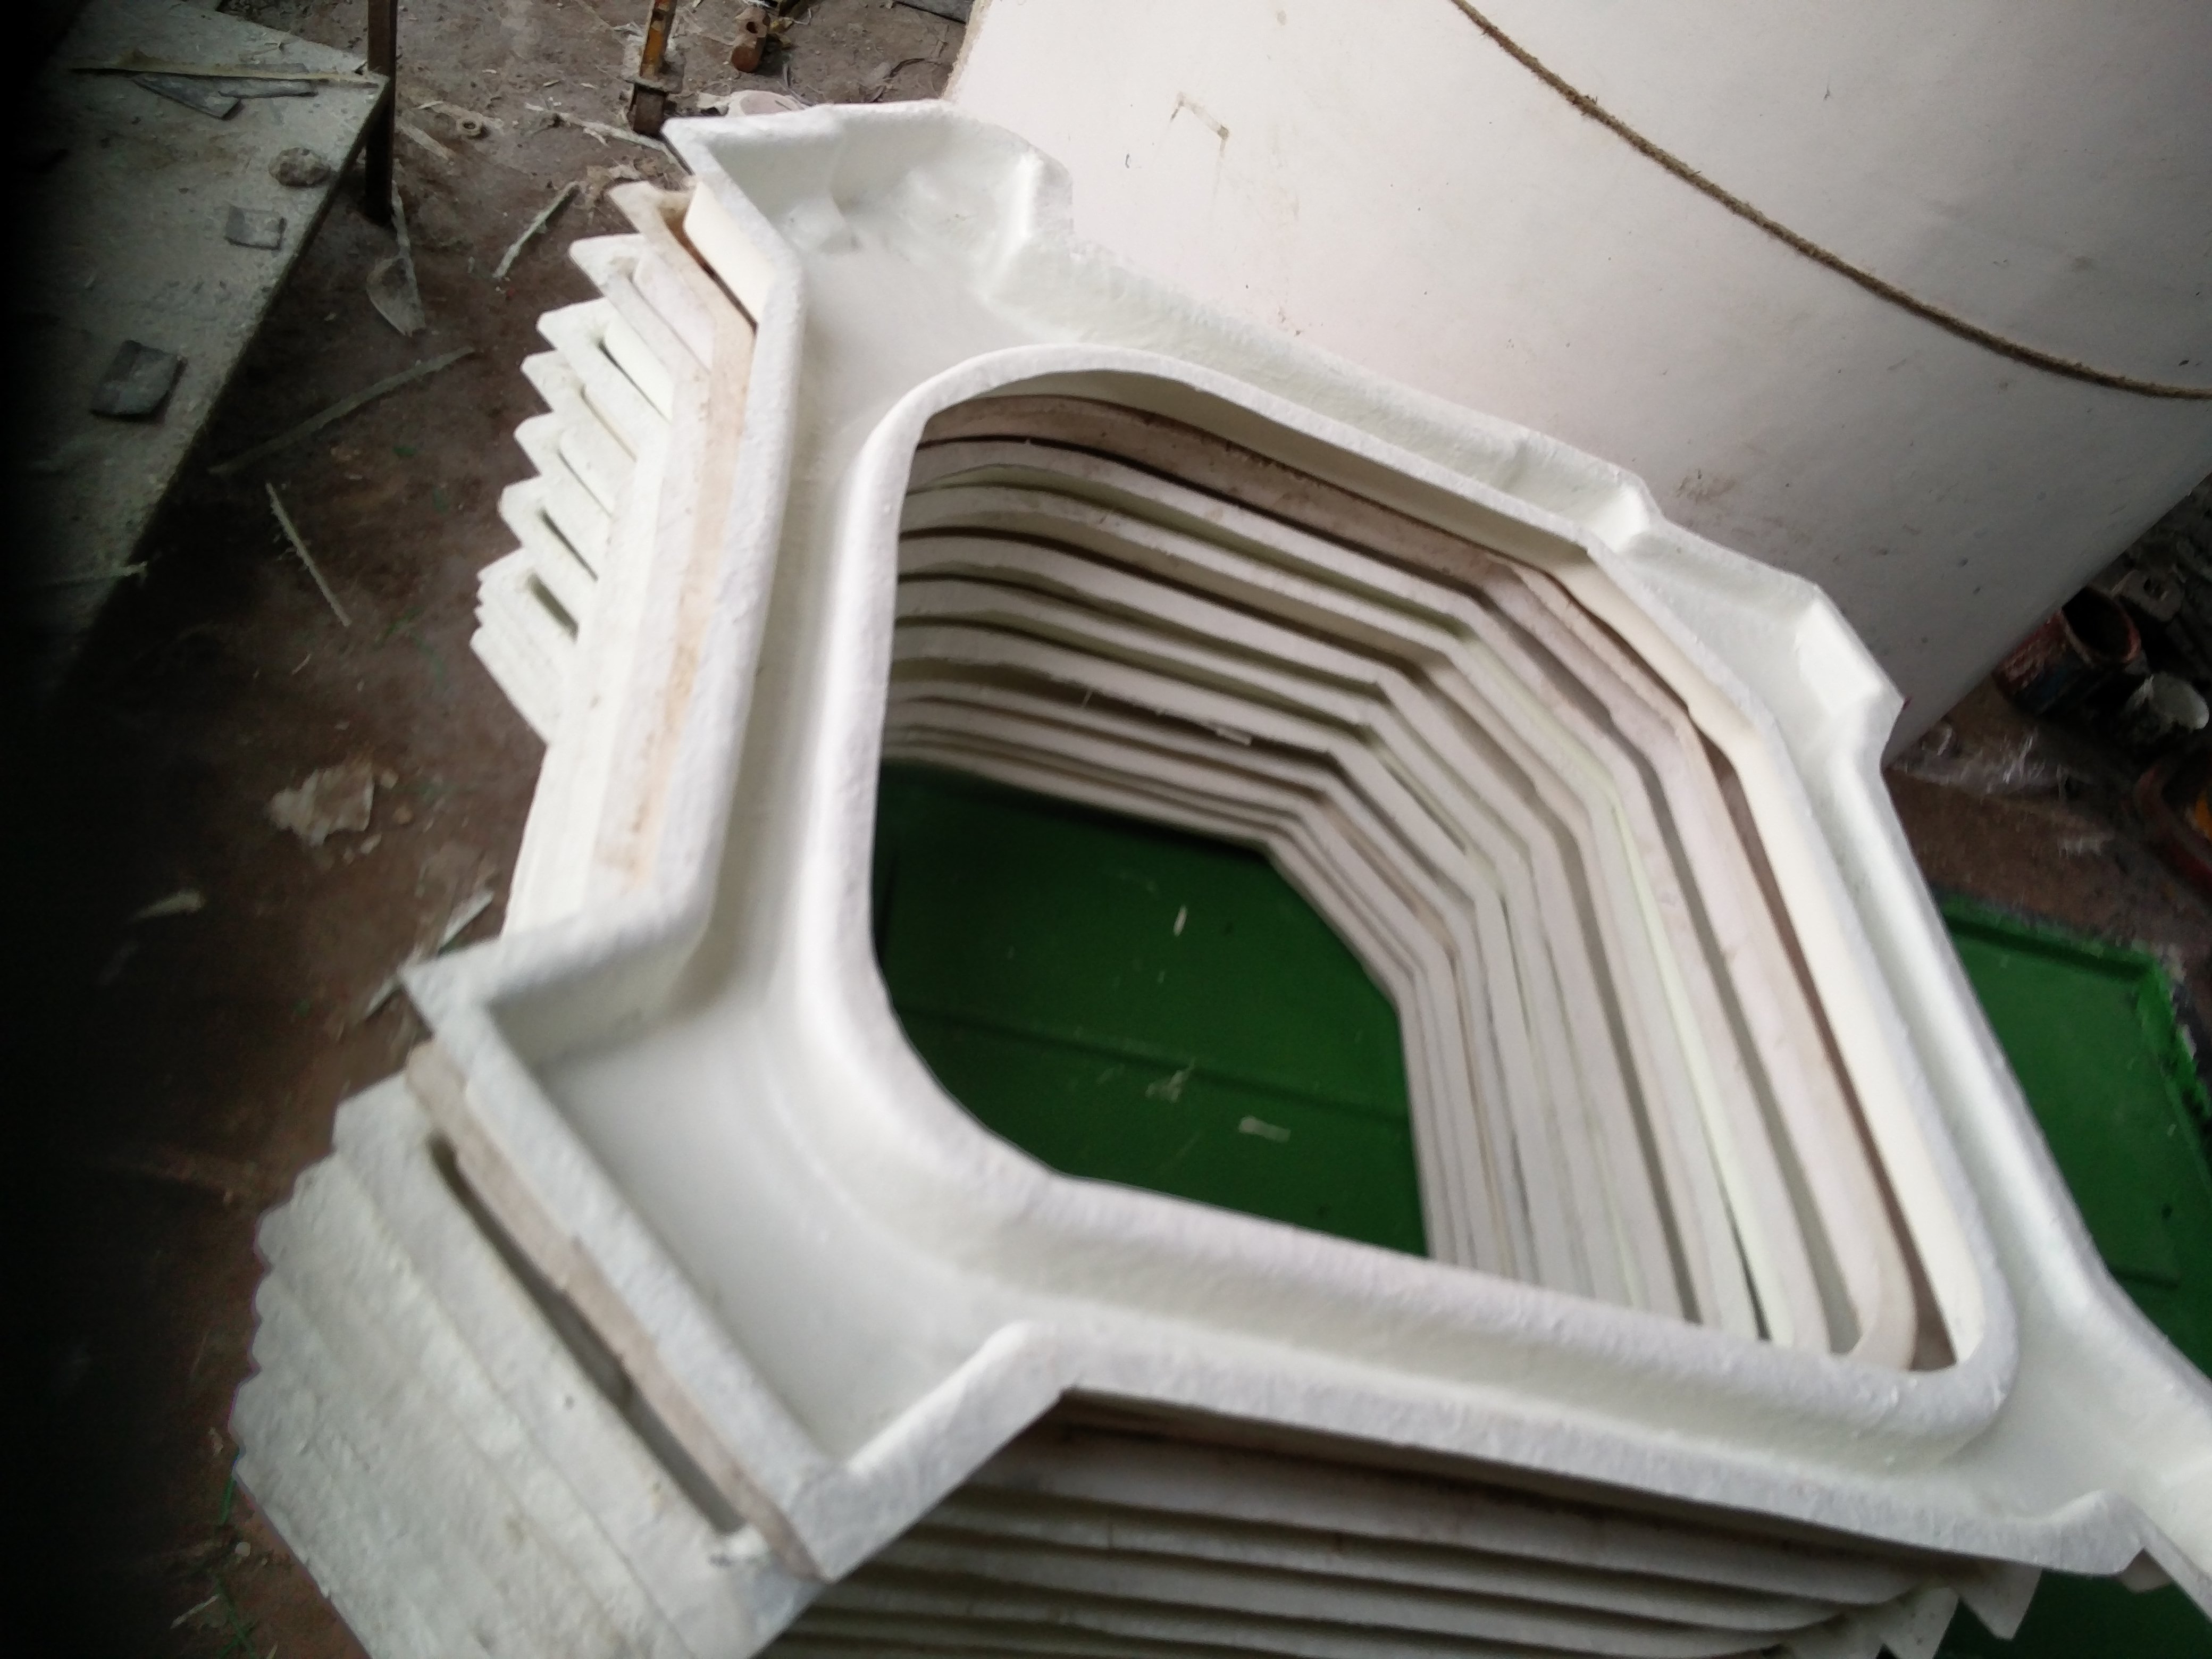 Fiberglass dip tray for HVAC plant